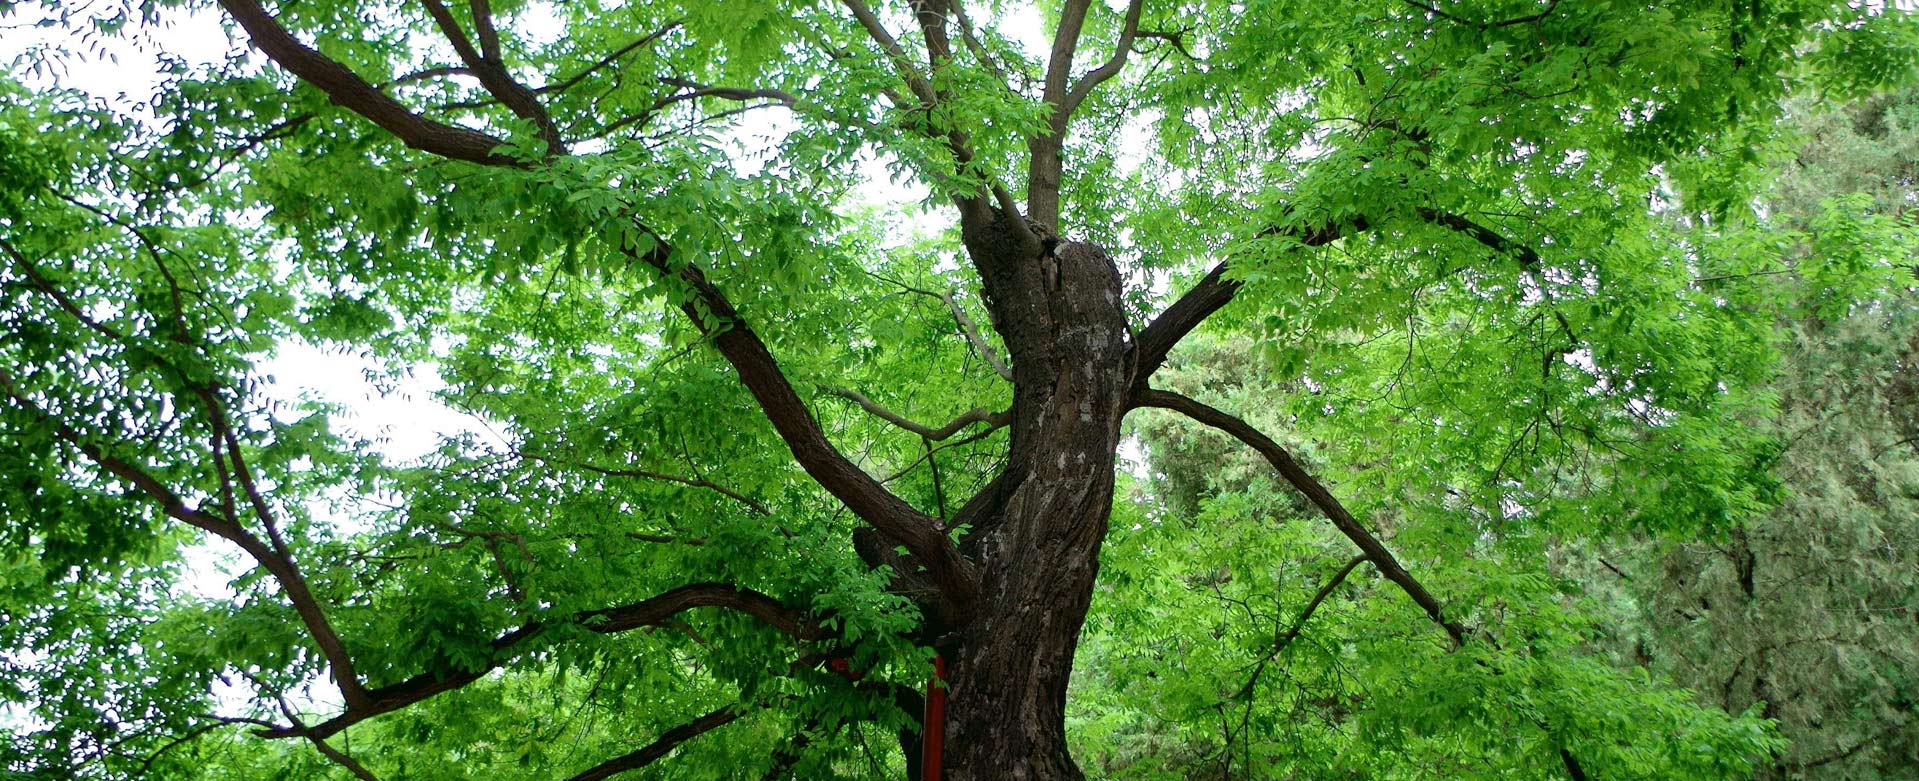 名木古树保护,抢救复壮,迁移,古树资源普查